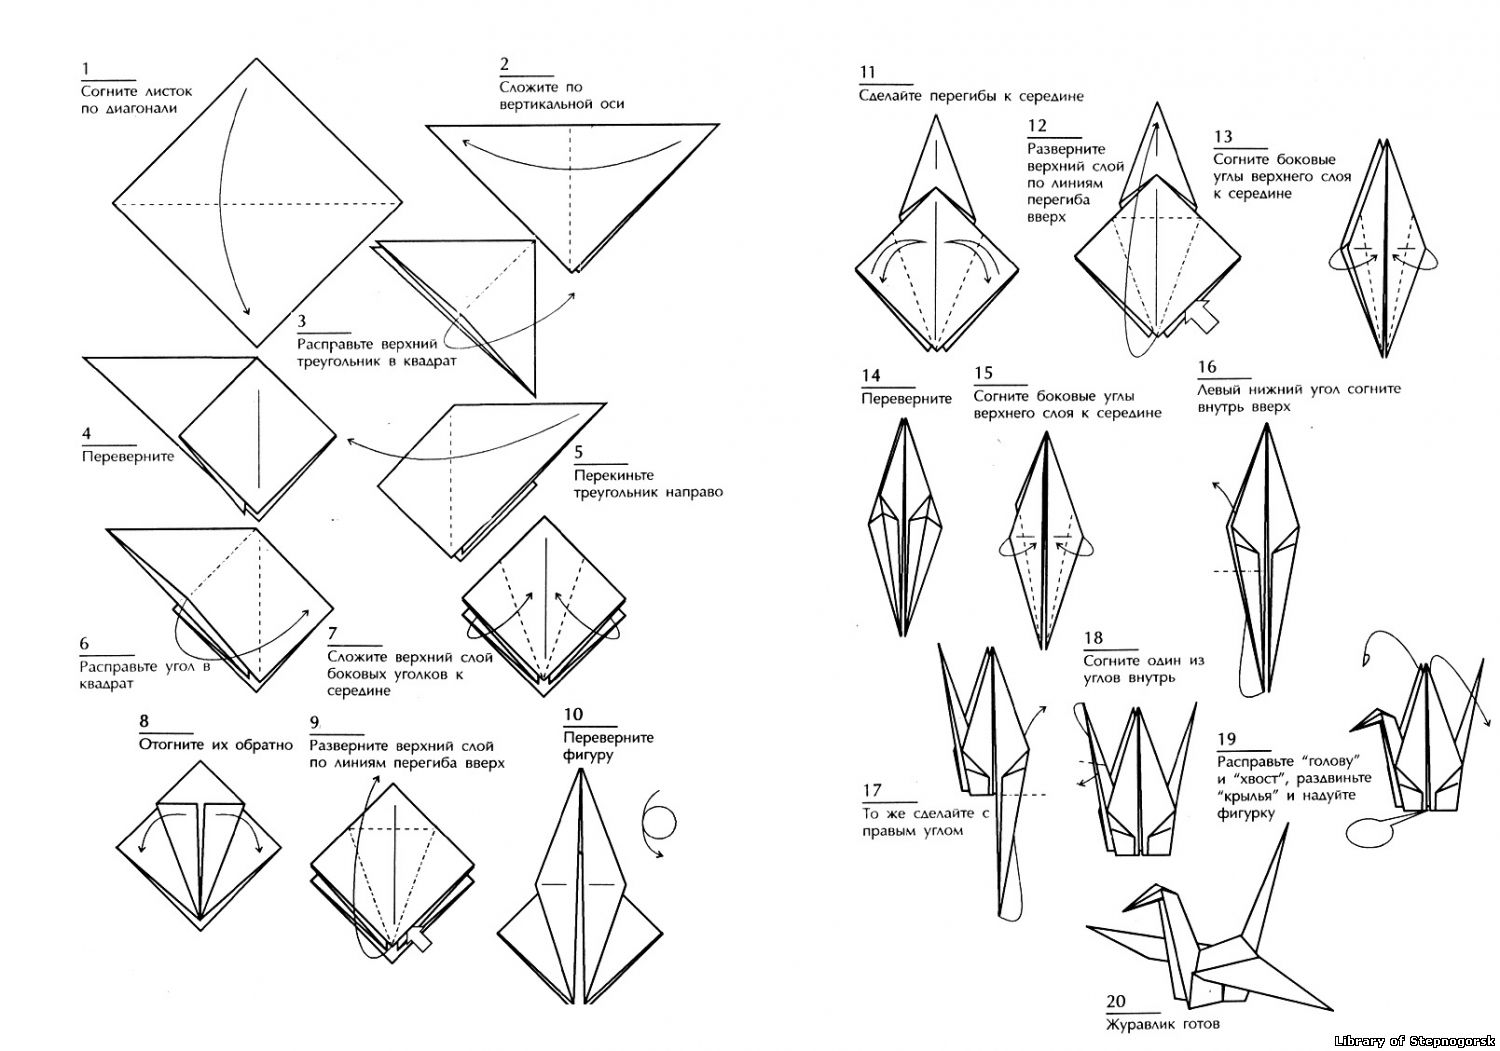 Оригами журавлик а4. Оригами из бумаги Журавлик схема для начинающих. Схема сборки журавлика оригами. Оригами из бумаги для начинающих Журавлик схема пошагово. Японский Журавлик схема сборки.